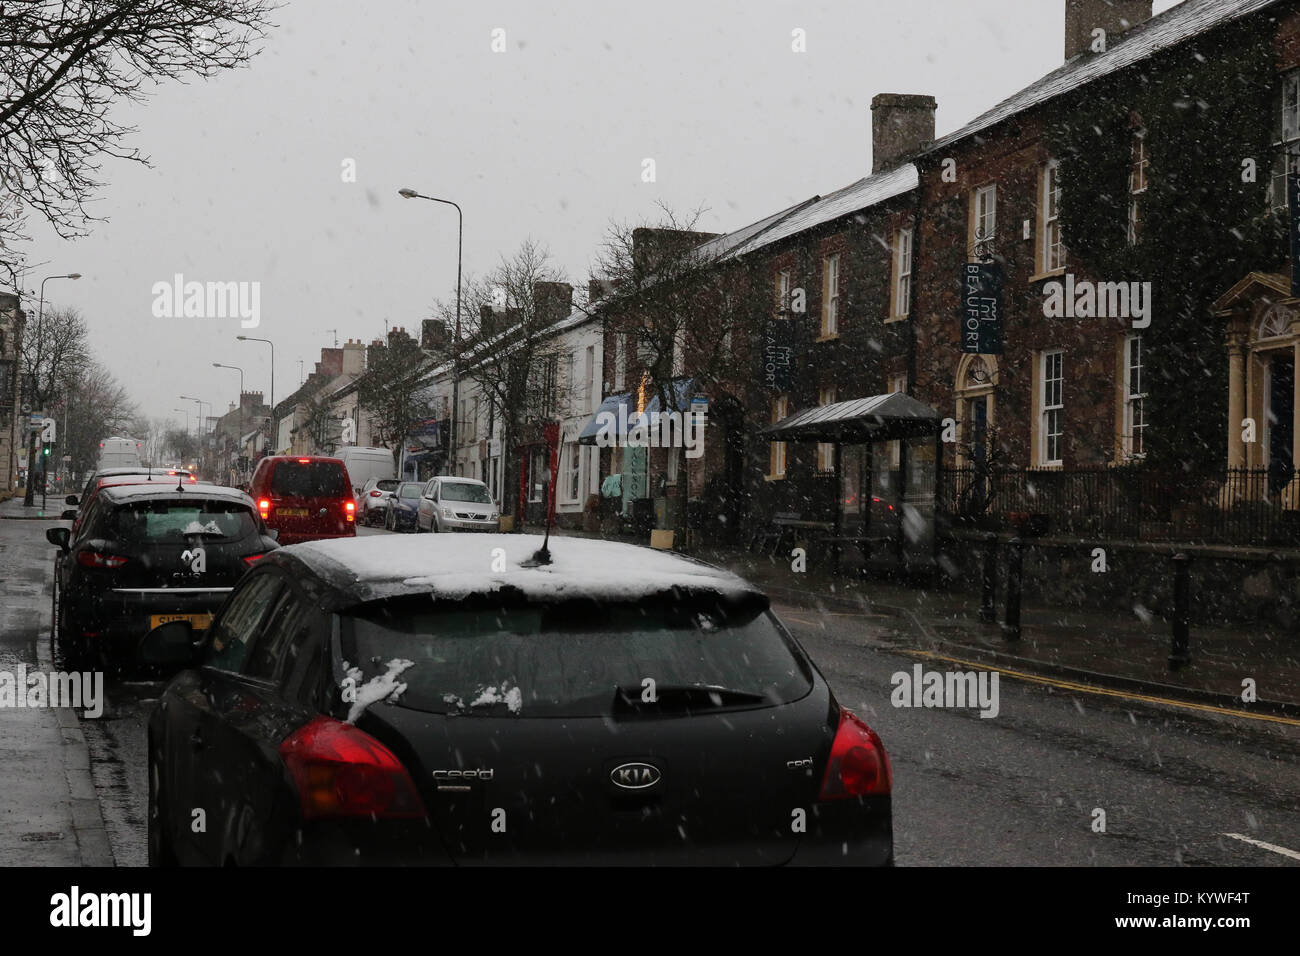 Moira, Condado de Down, Irlanda del Norte. El 16 de enero de 2018. El clima del Reino Unido - duchas heladas y nieve han sido recorre Irlanda del Norte hoy en día, el Met Office ha mejorado su advertencia de hielo y nieve de "amarillo" a "ámbar" con el martes por la noche es potencialmente un período difícil. La nieve pesada es ahora caen en esta área (14.40 GMT). La nieve caída en la aldea de Moira, Condado de Down. Crédito: David Hunter/Alamy Live News. Foto de stock